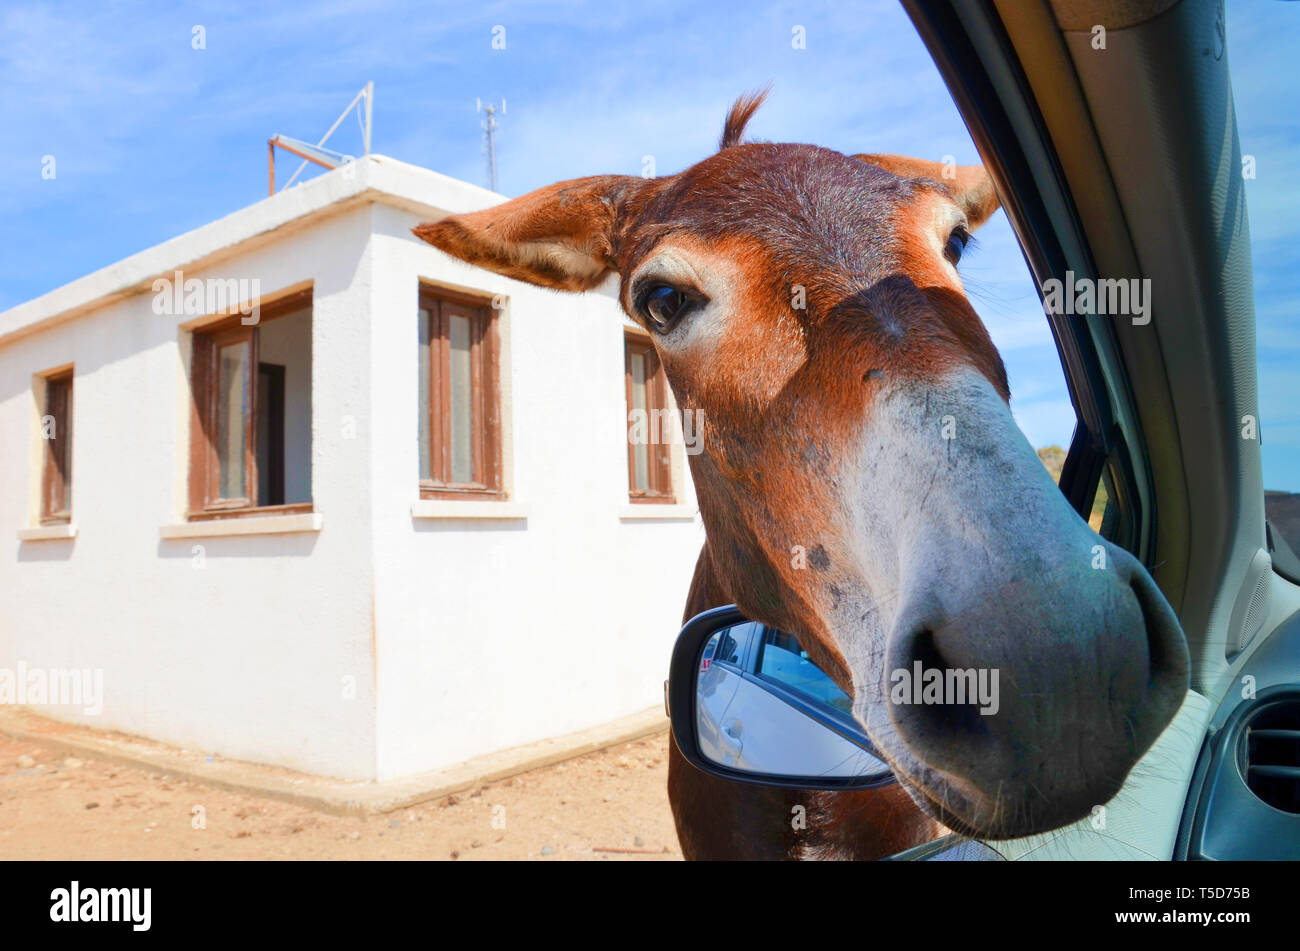 Avec son âne brun sauvage avait ouvert la fenêtre de voiture. Bâtiment blanc en arrière-plan. Prises dans la péninsule de Karpas, bain turc du nord de Chypre. Les ânes sauvages sont populaires attraction de cette région chypriote. Banque D'Images